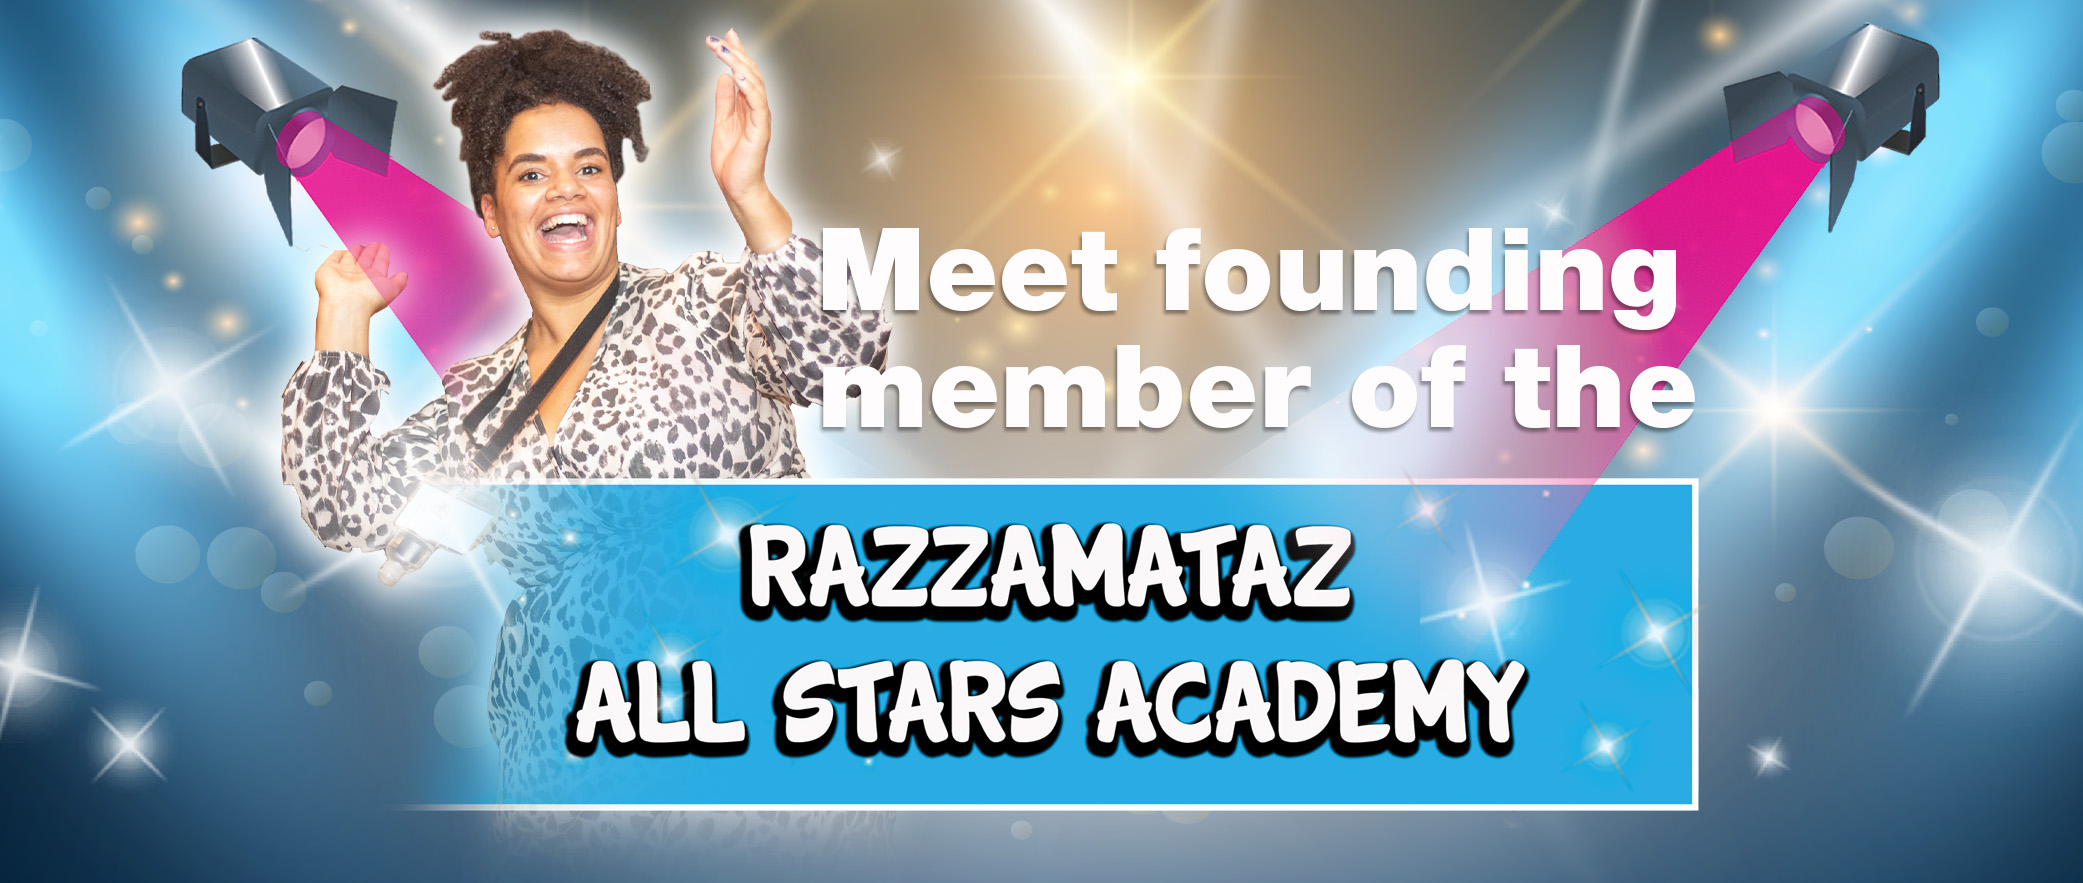 Meet founder member razzamataz all star academy Asha Richardson